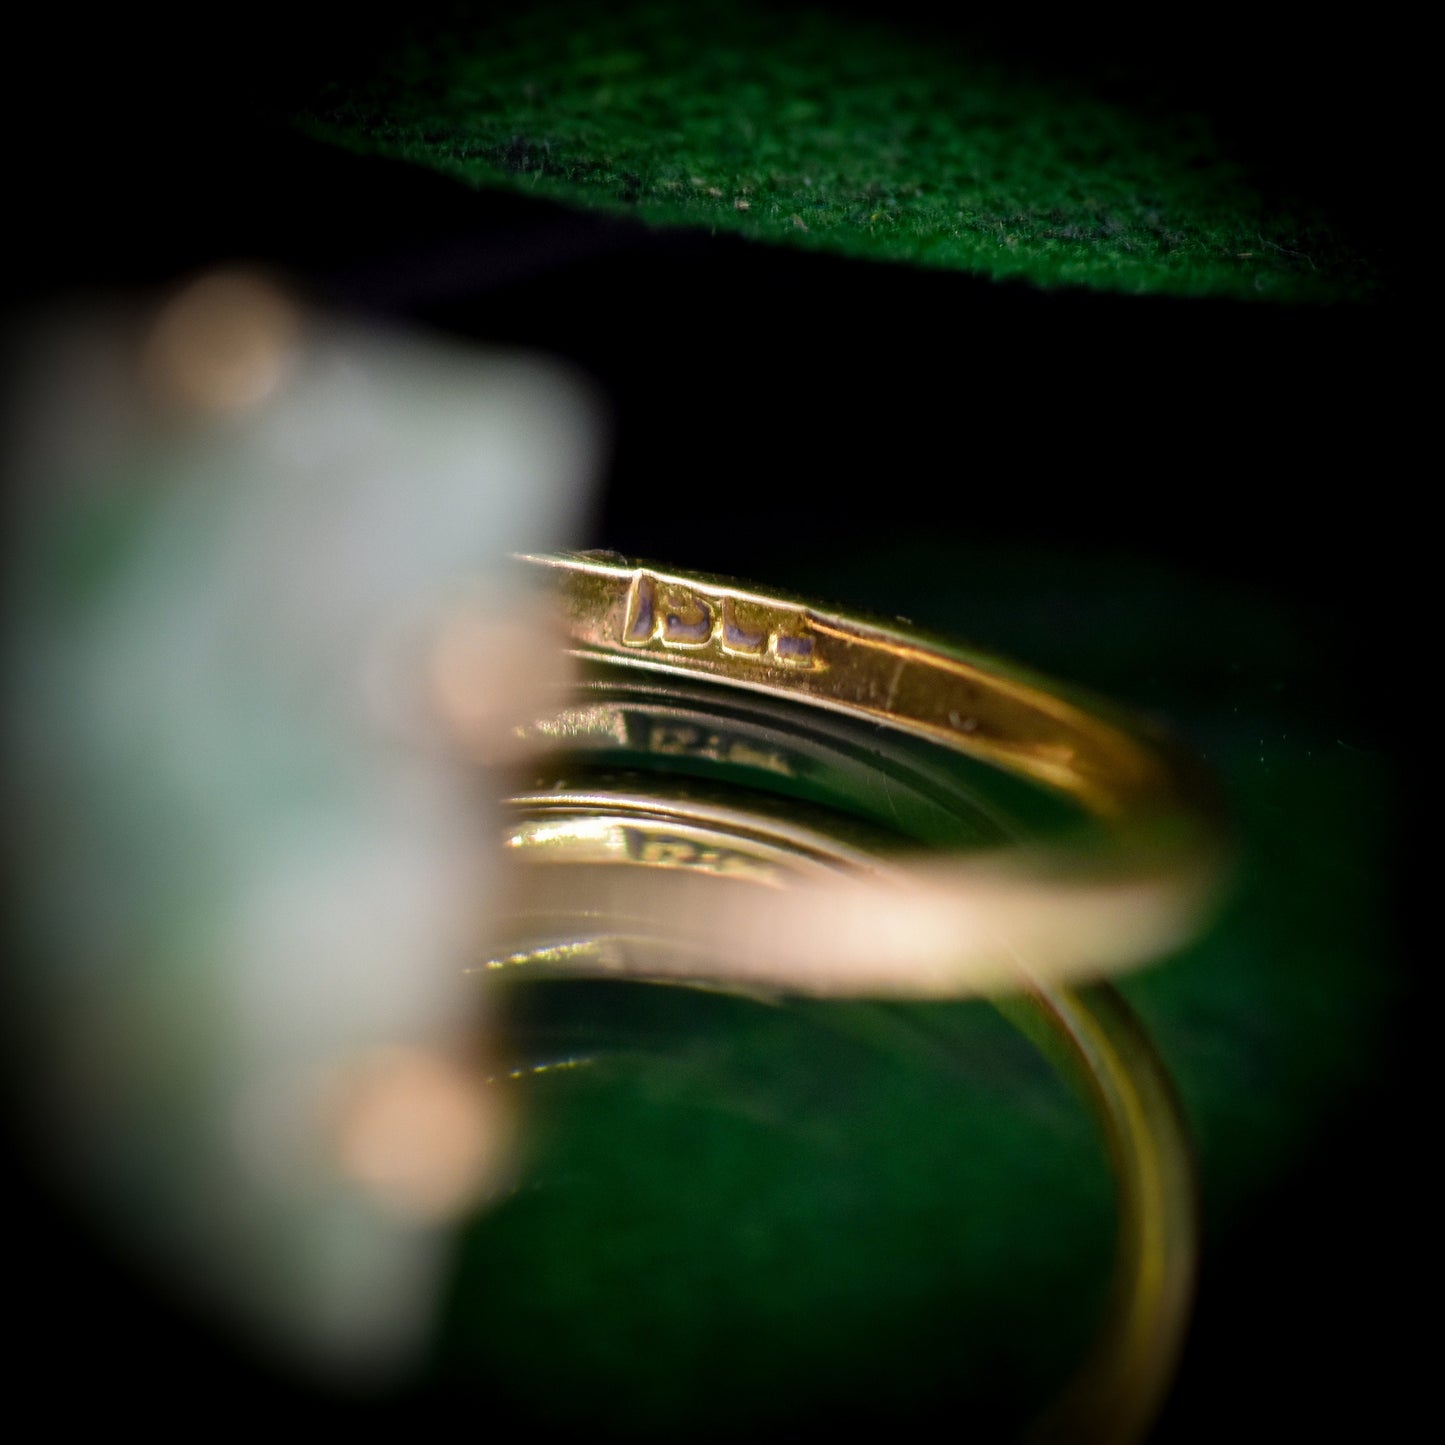 Art Deco Carved Jade 15ct Gold Panel Ring | Antique Vintage